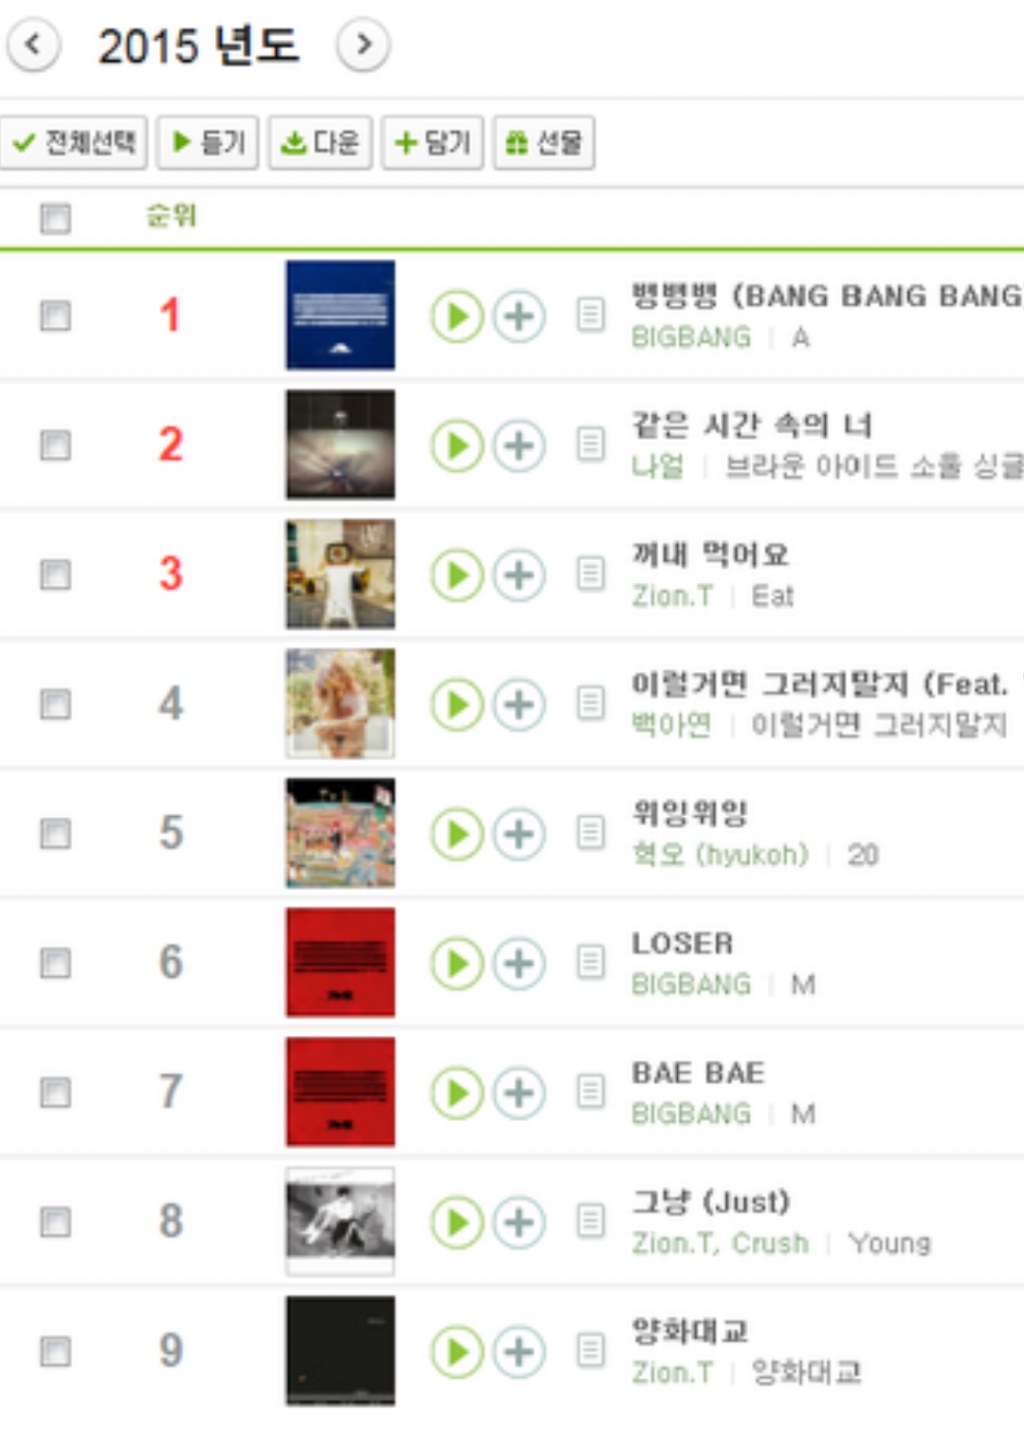 Kpop Melon Chart